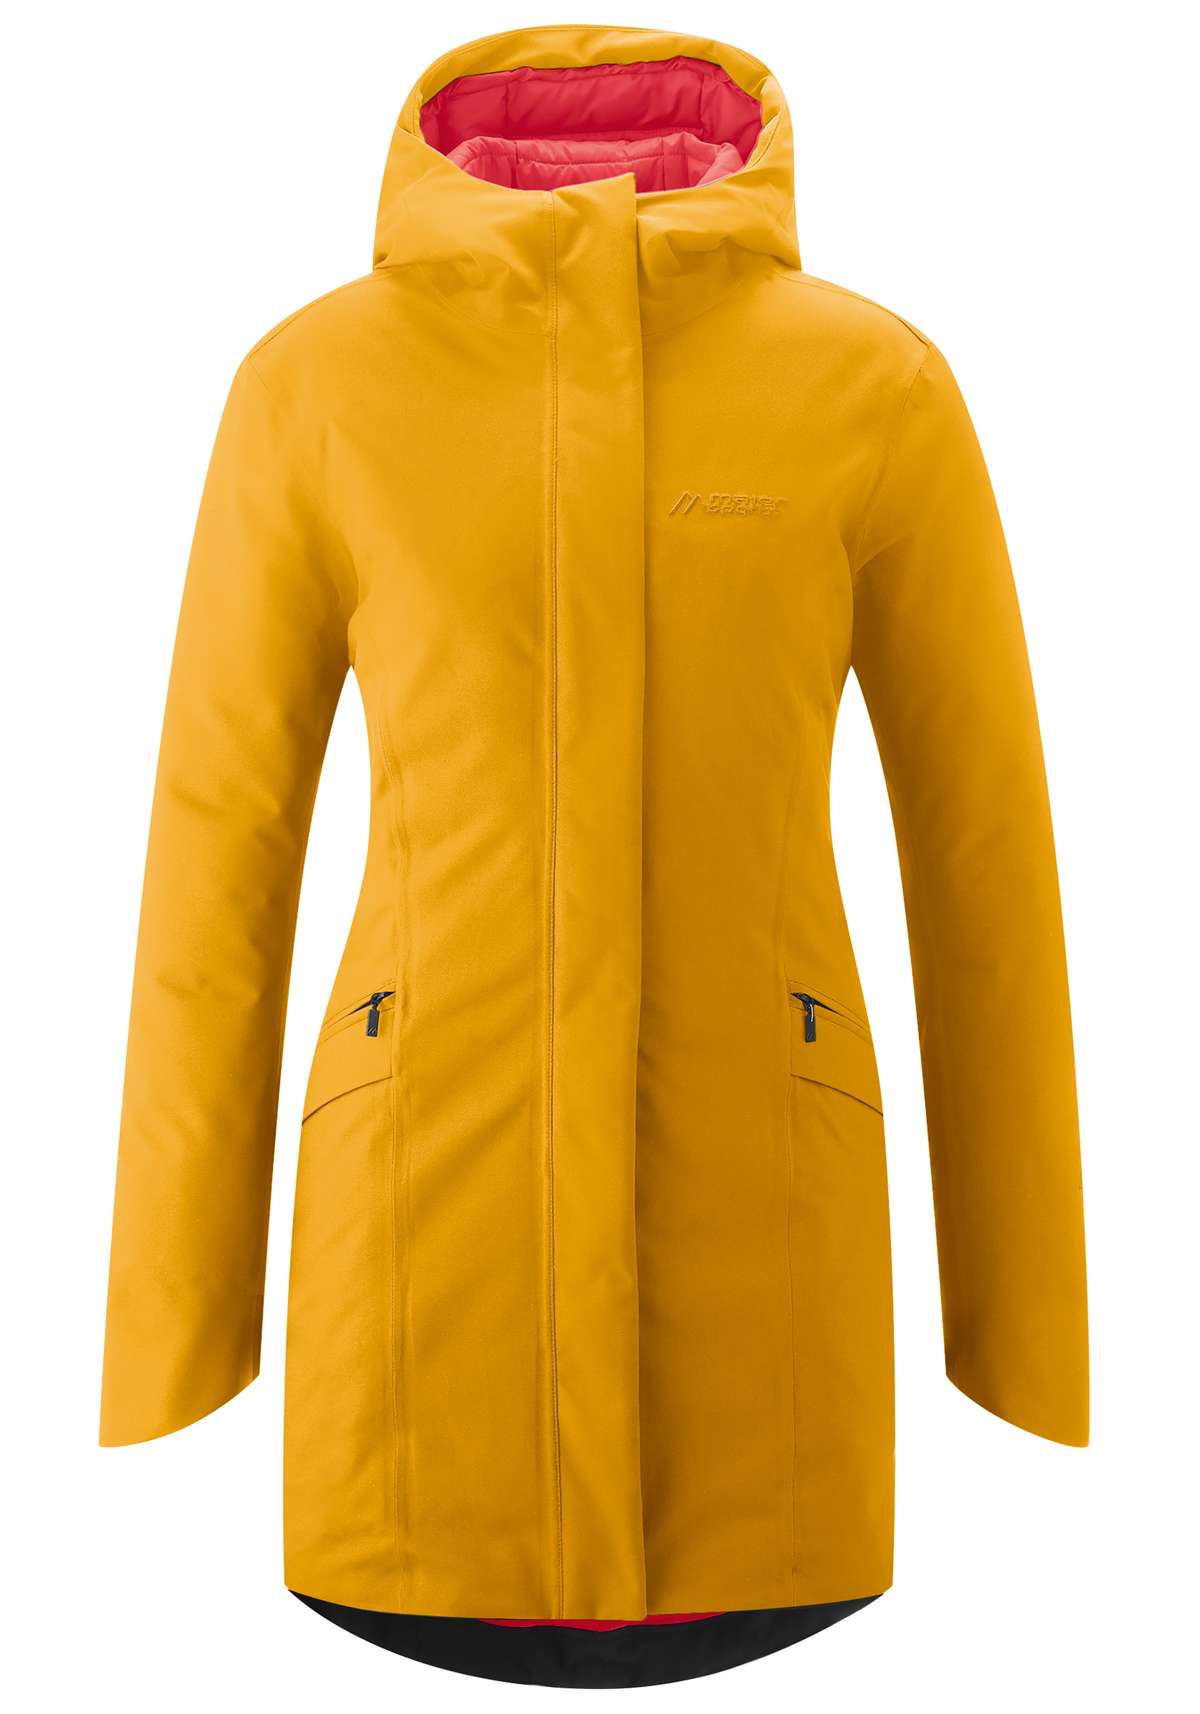 Функциональная куртка, спортивное пальто для активного отдыха и города, с легкой подкладкой.